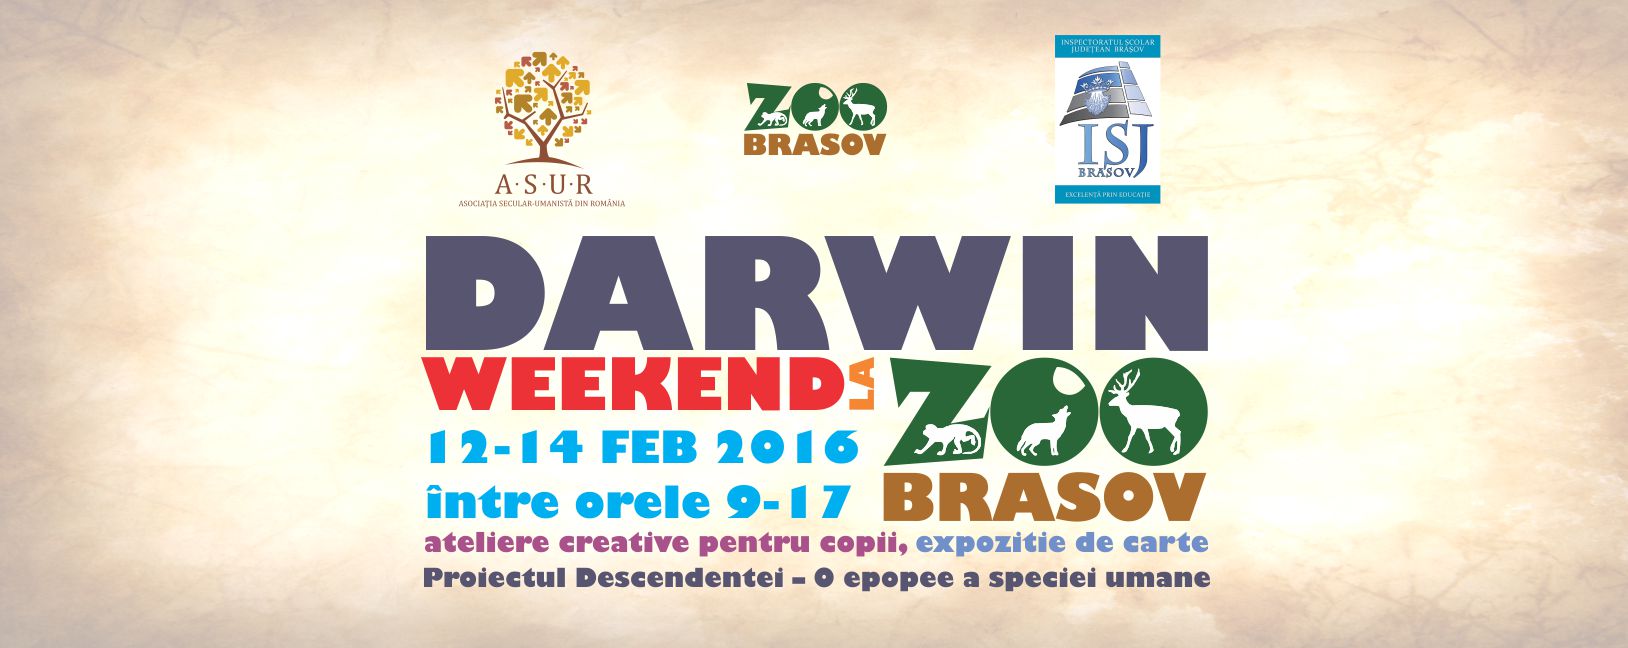 darwin-weekend-zoo-brasov-12-14-feb-2016